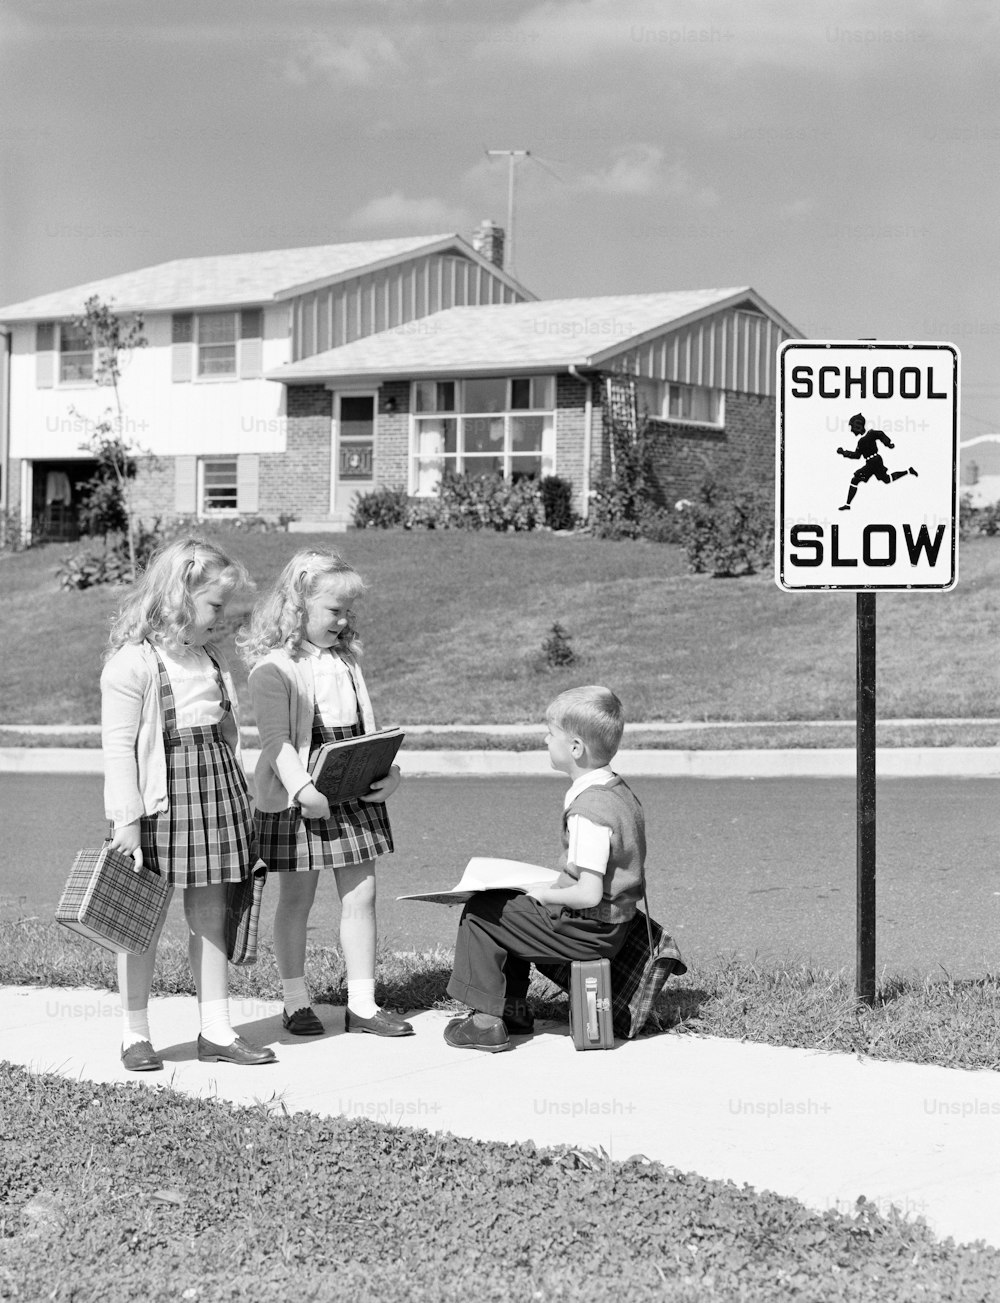 ESTADOS UNIDOS - CIRCA 1950s: Dos niñas caminando a la escuela, niño sentado en la lonchera.